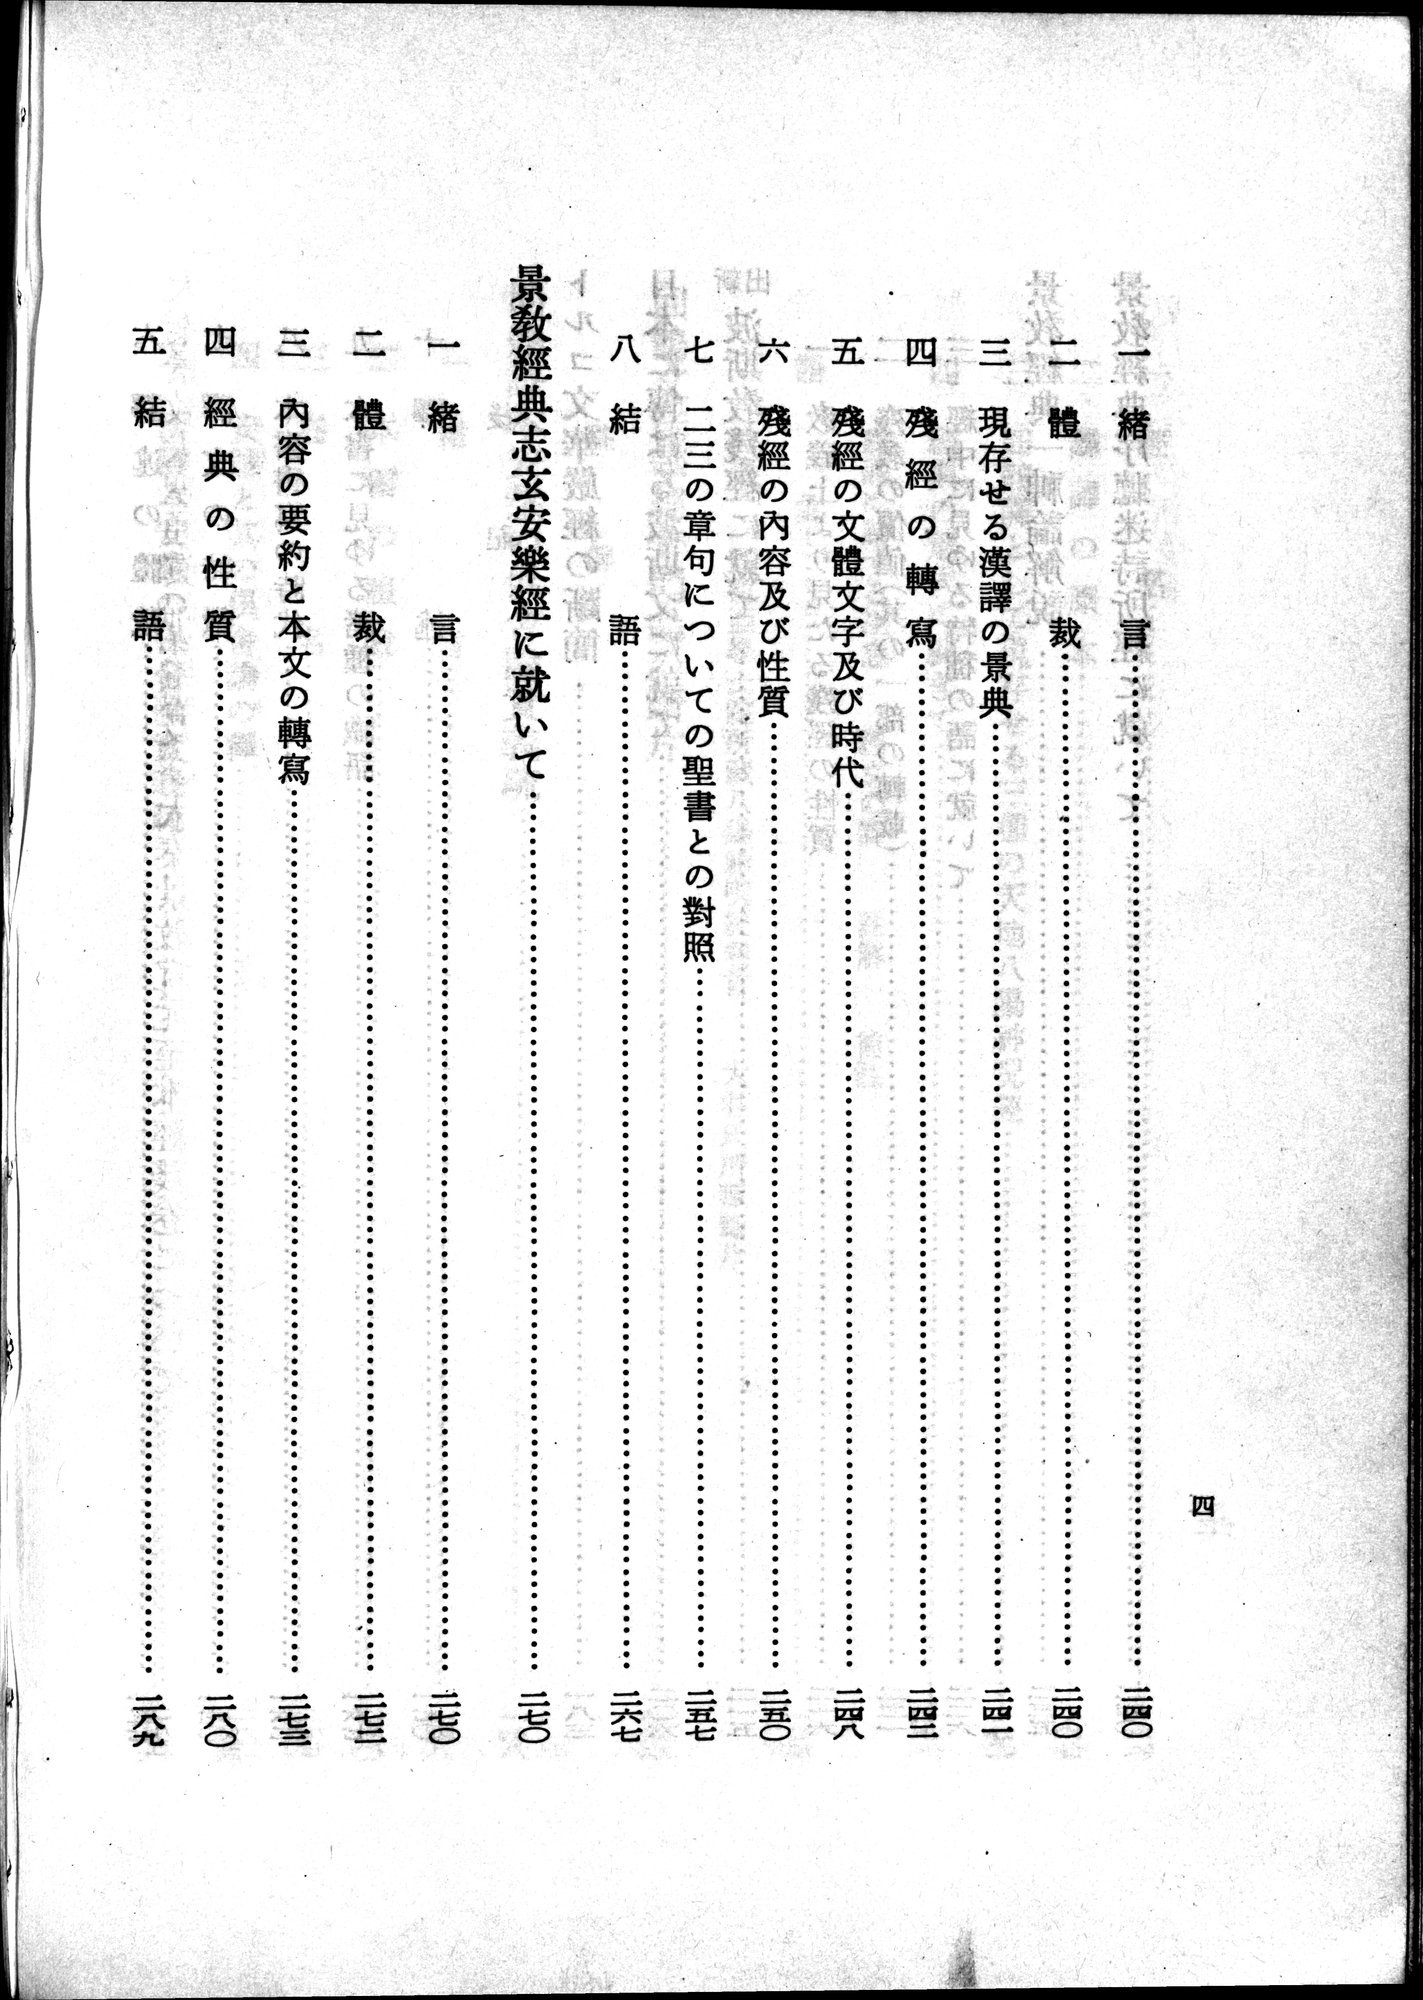 羽田博士史学論文集 : vol.2 / 42 ページ（白黒高解像度画像）